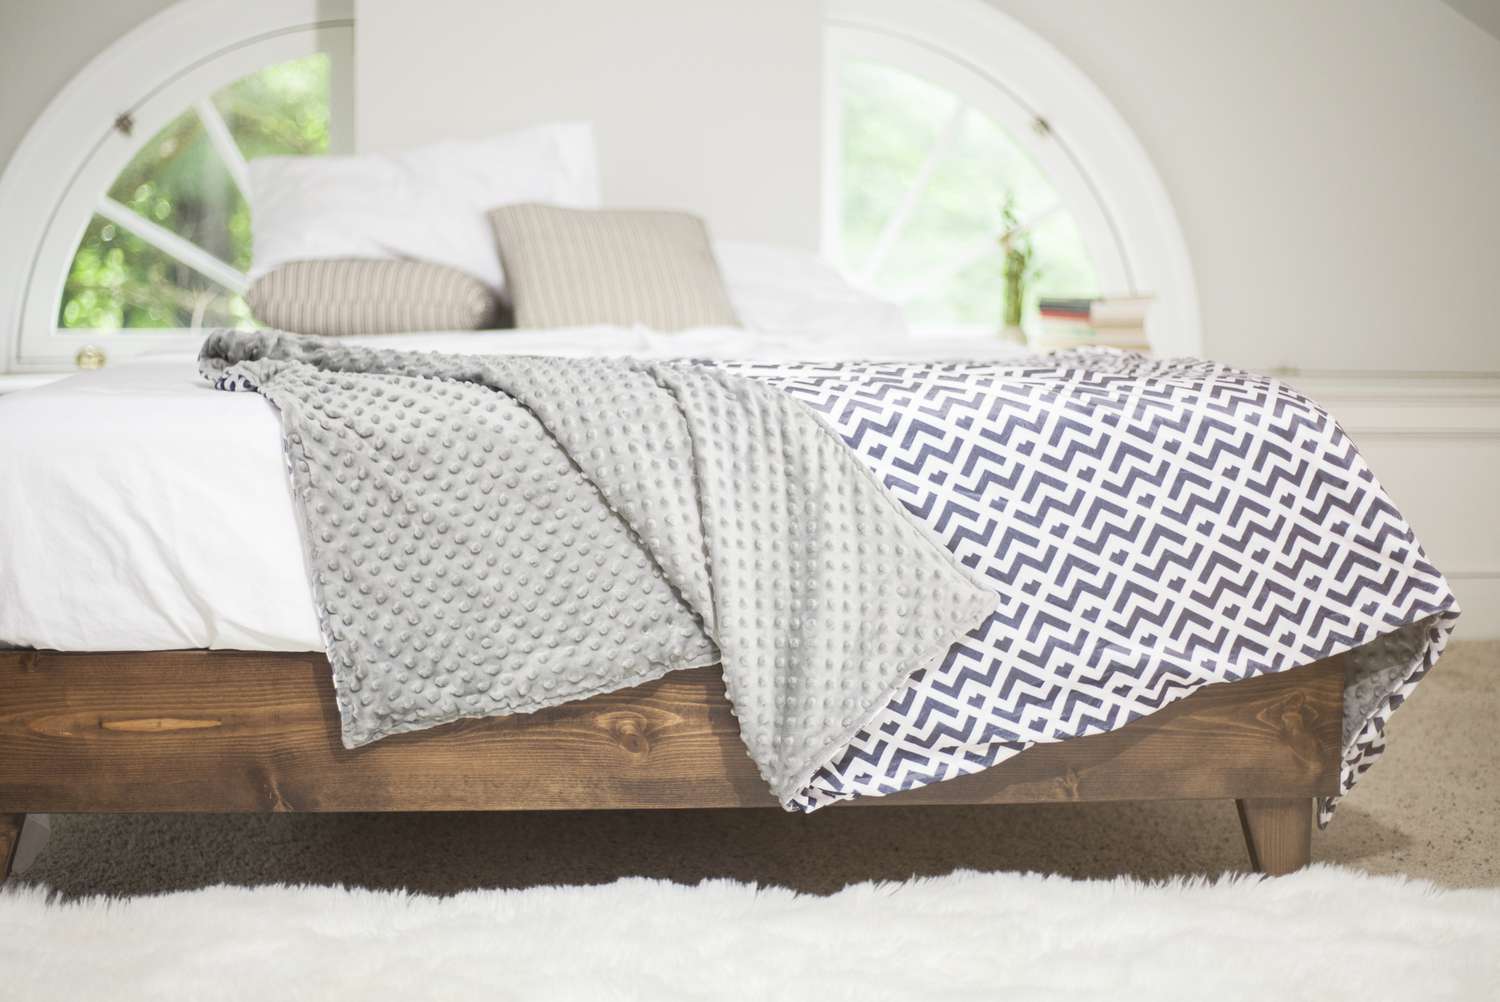 Cobertor ponderado reversível em uma cama com estrutura de madeira e lençóis brancos